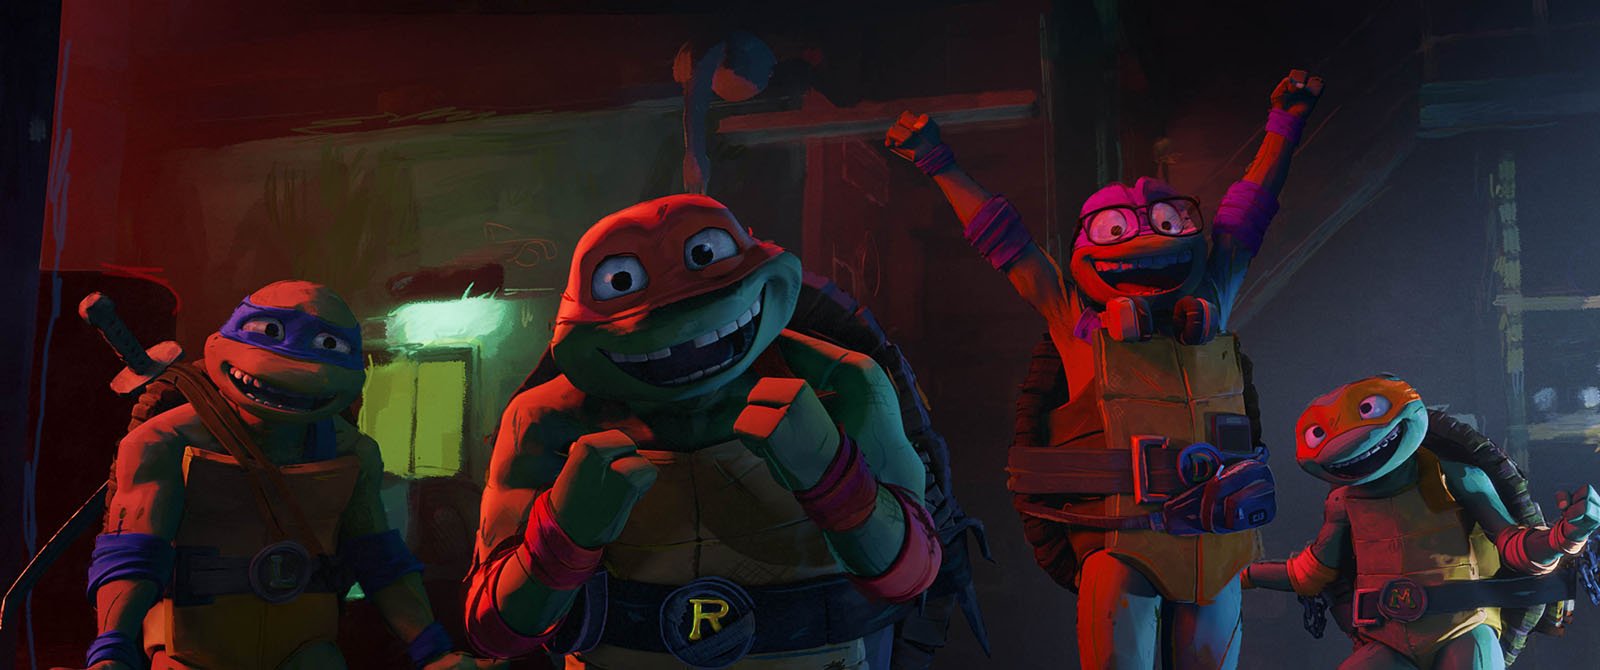 TMNT, les tortues ninja : bande annonce du film, séances